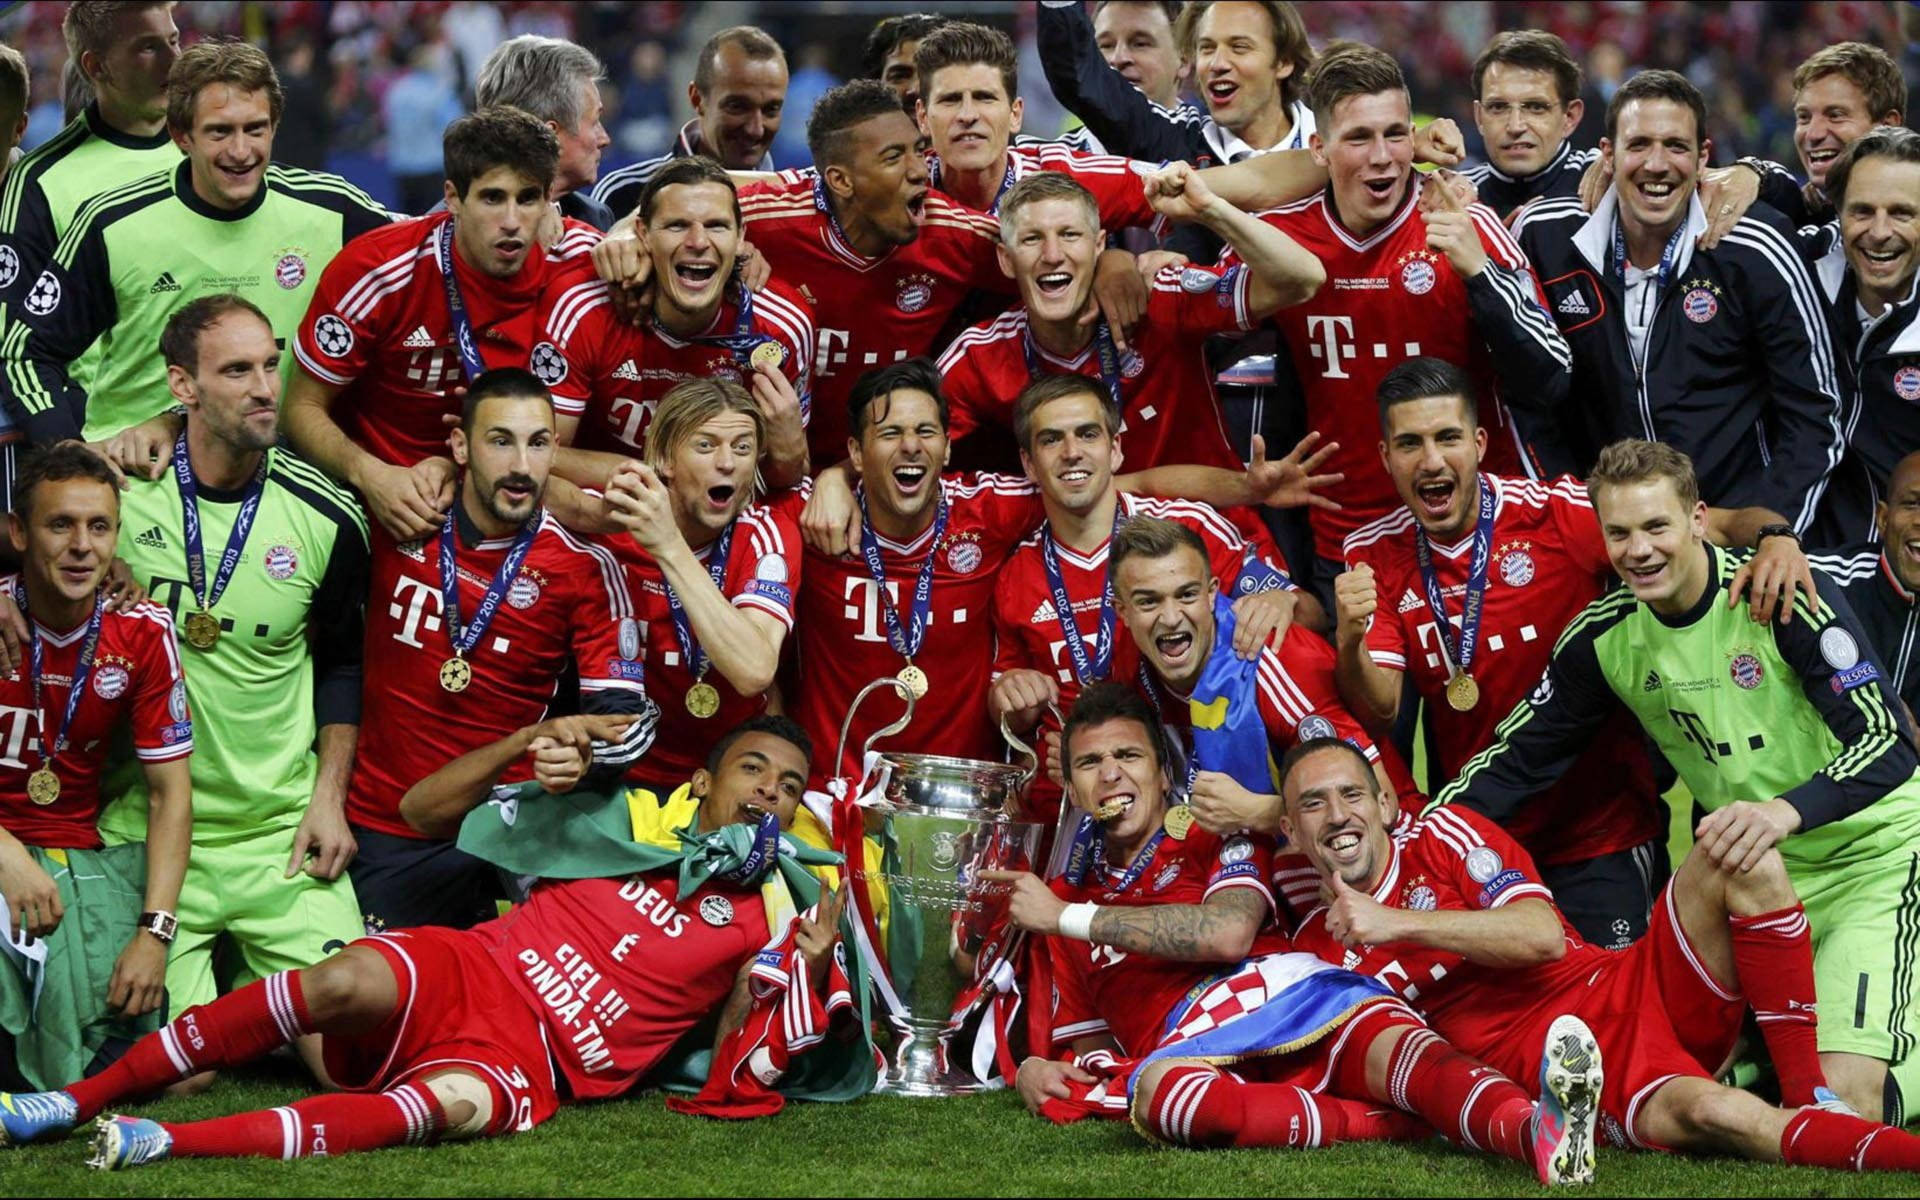 Bayern Munich Champions League 2013